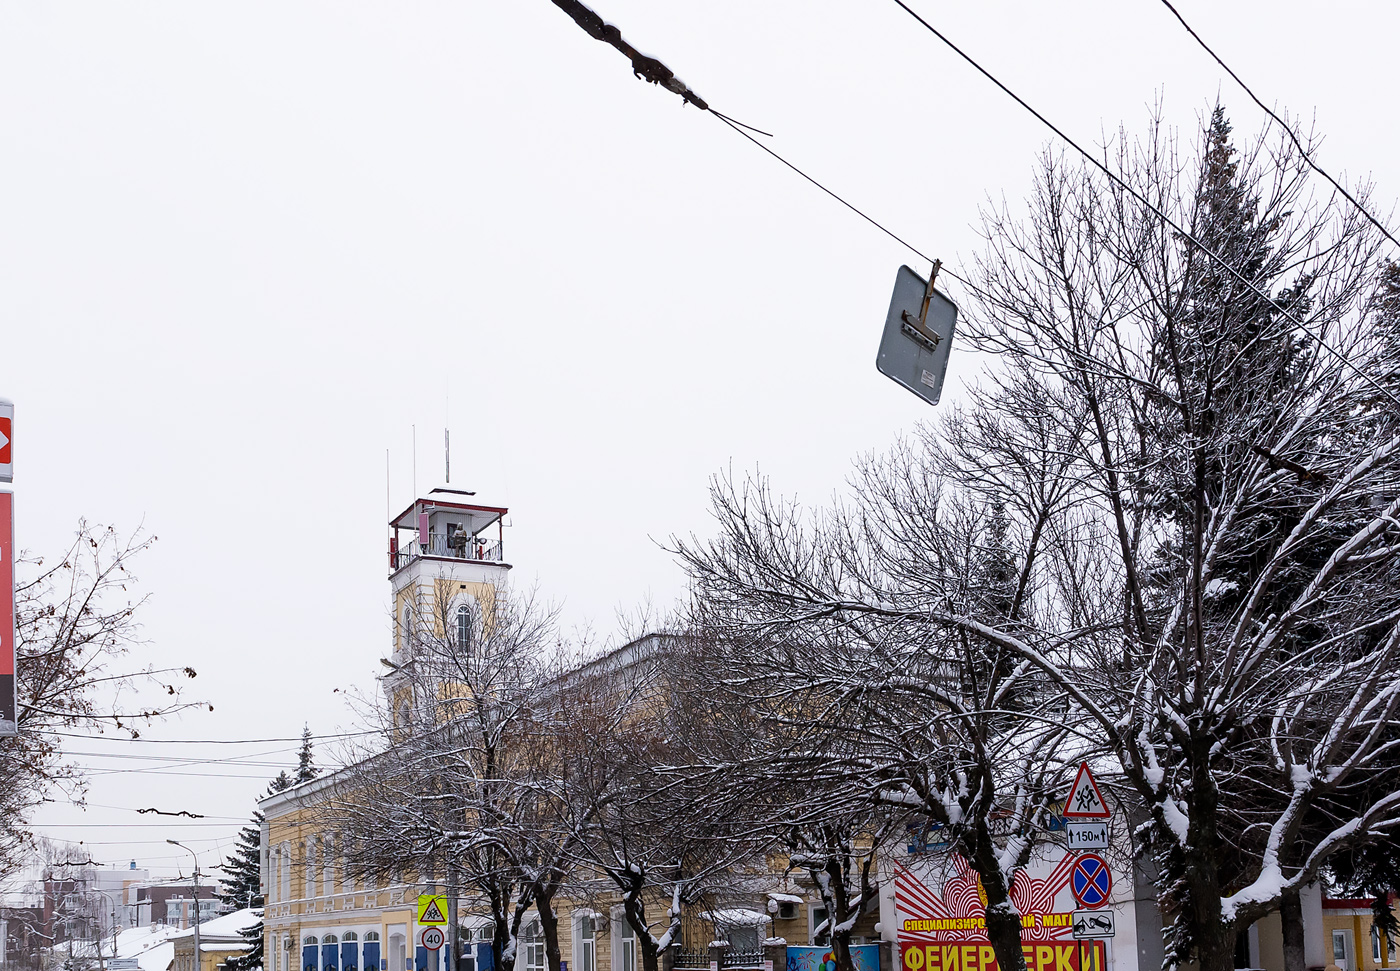 Уфа — Демонтажи; Уфа — Закрытые троллейбусные линии